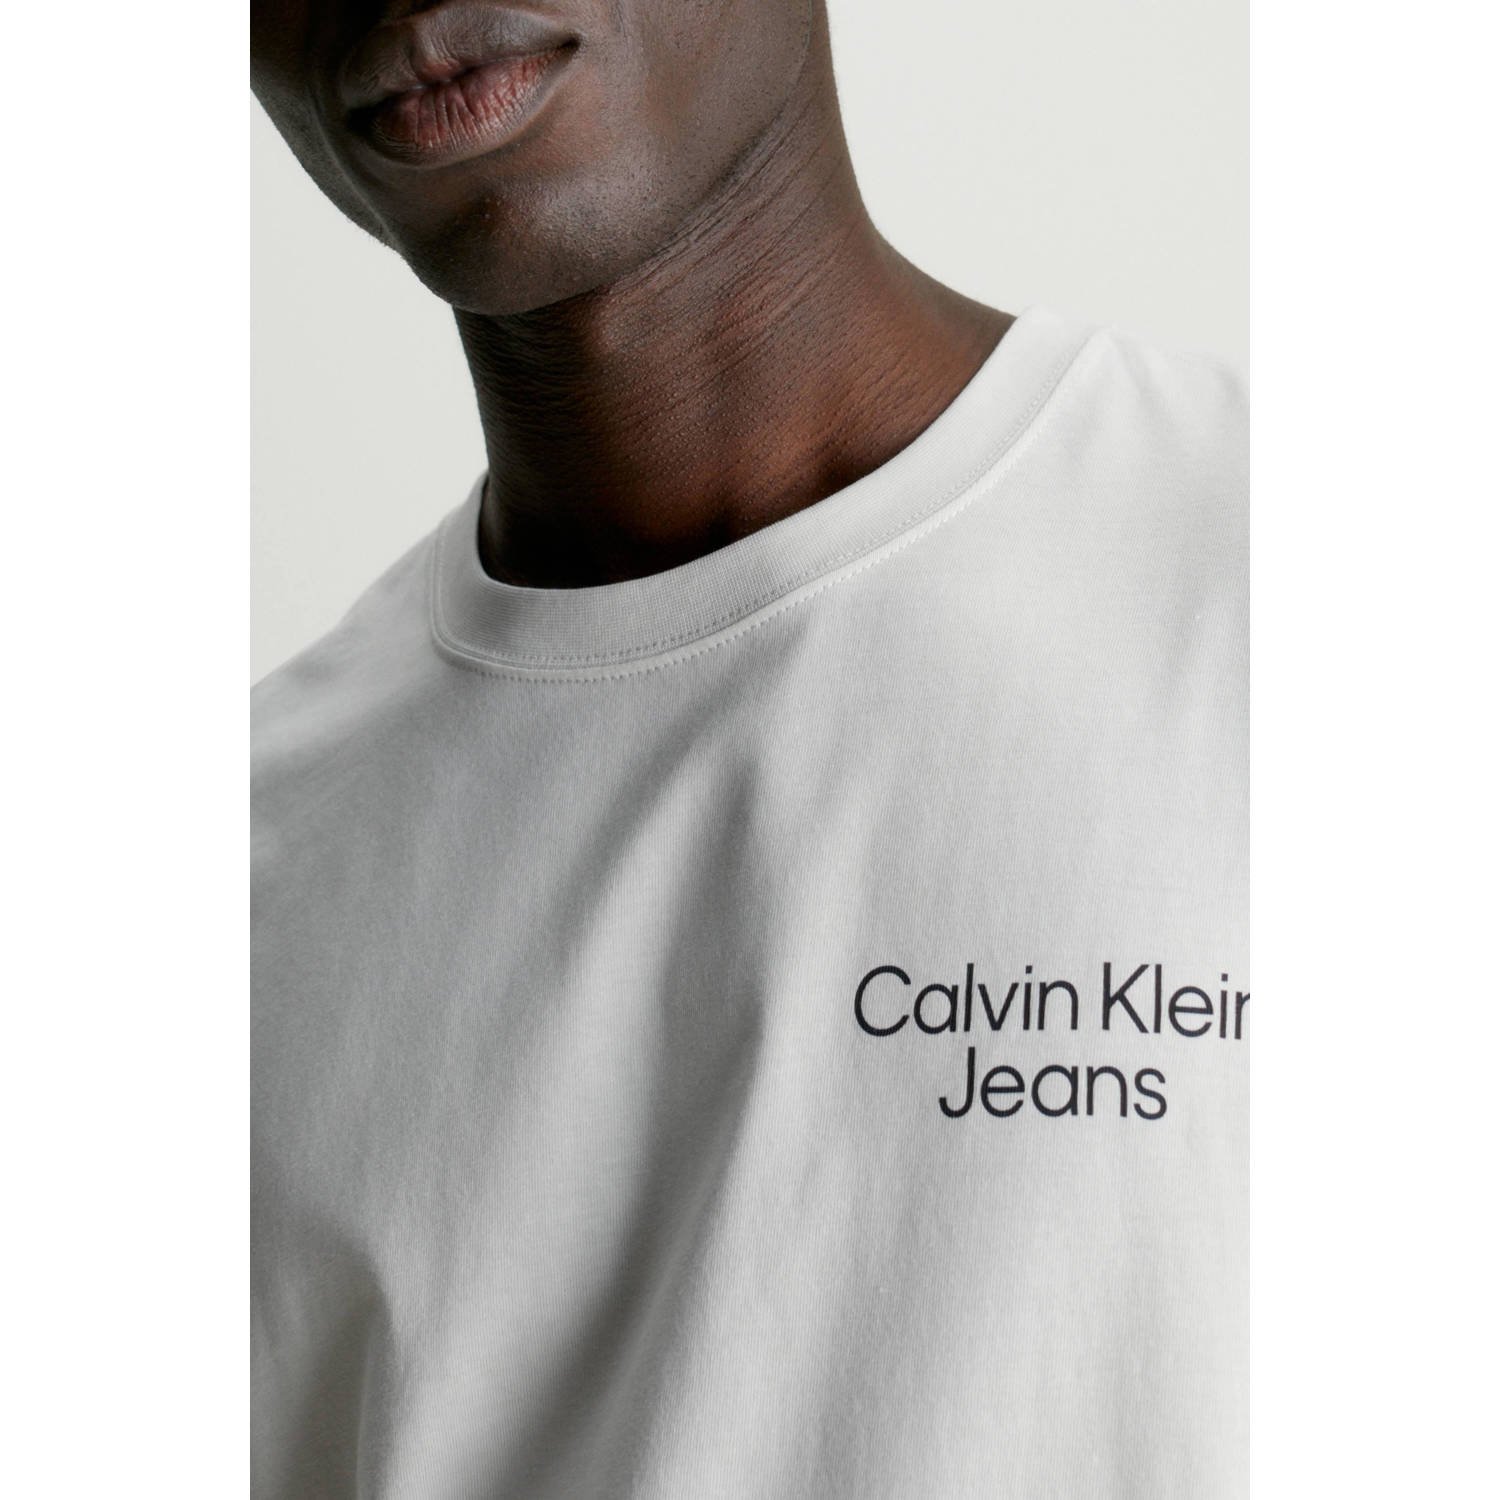 CALVIN KLEIN JEANS T-shirt met backprint ecru